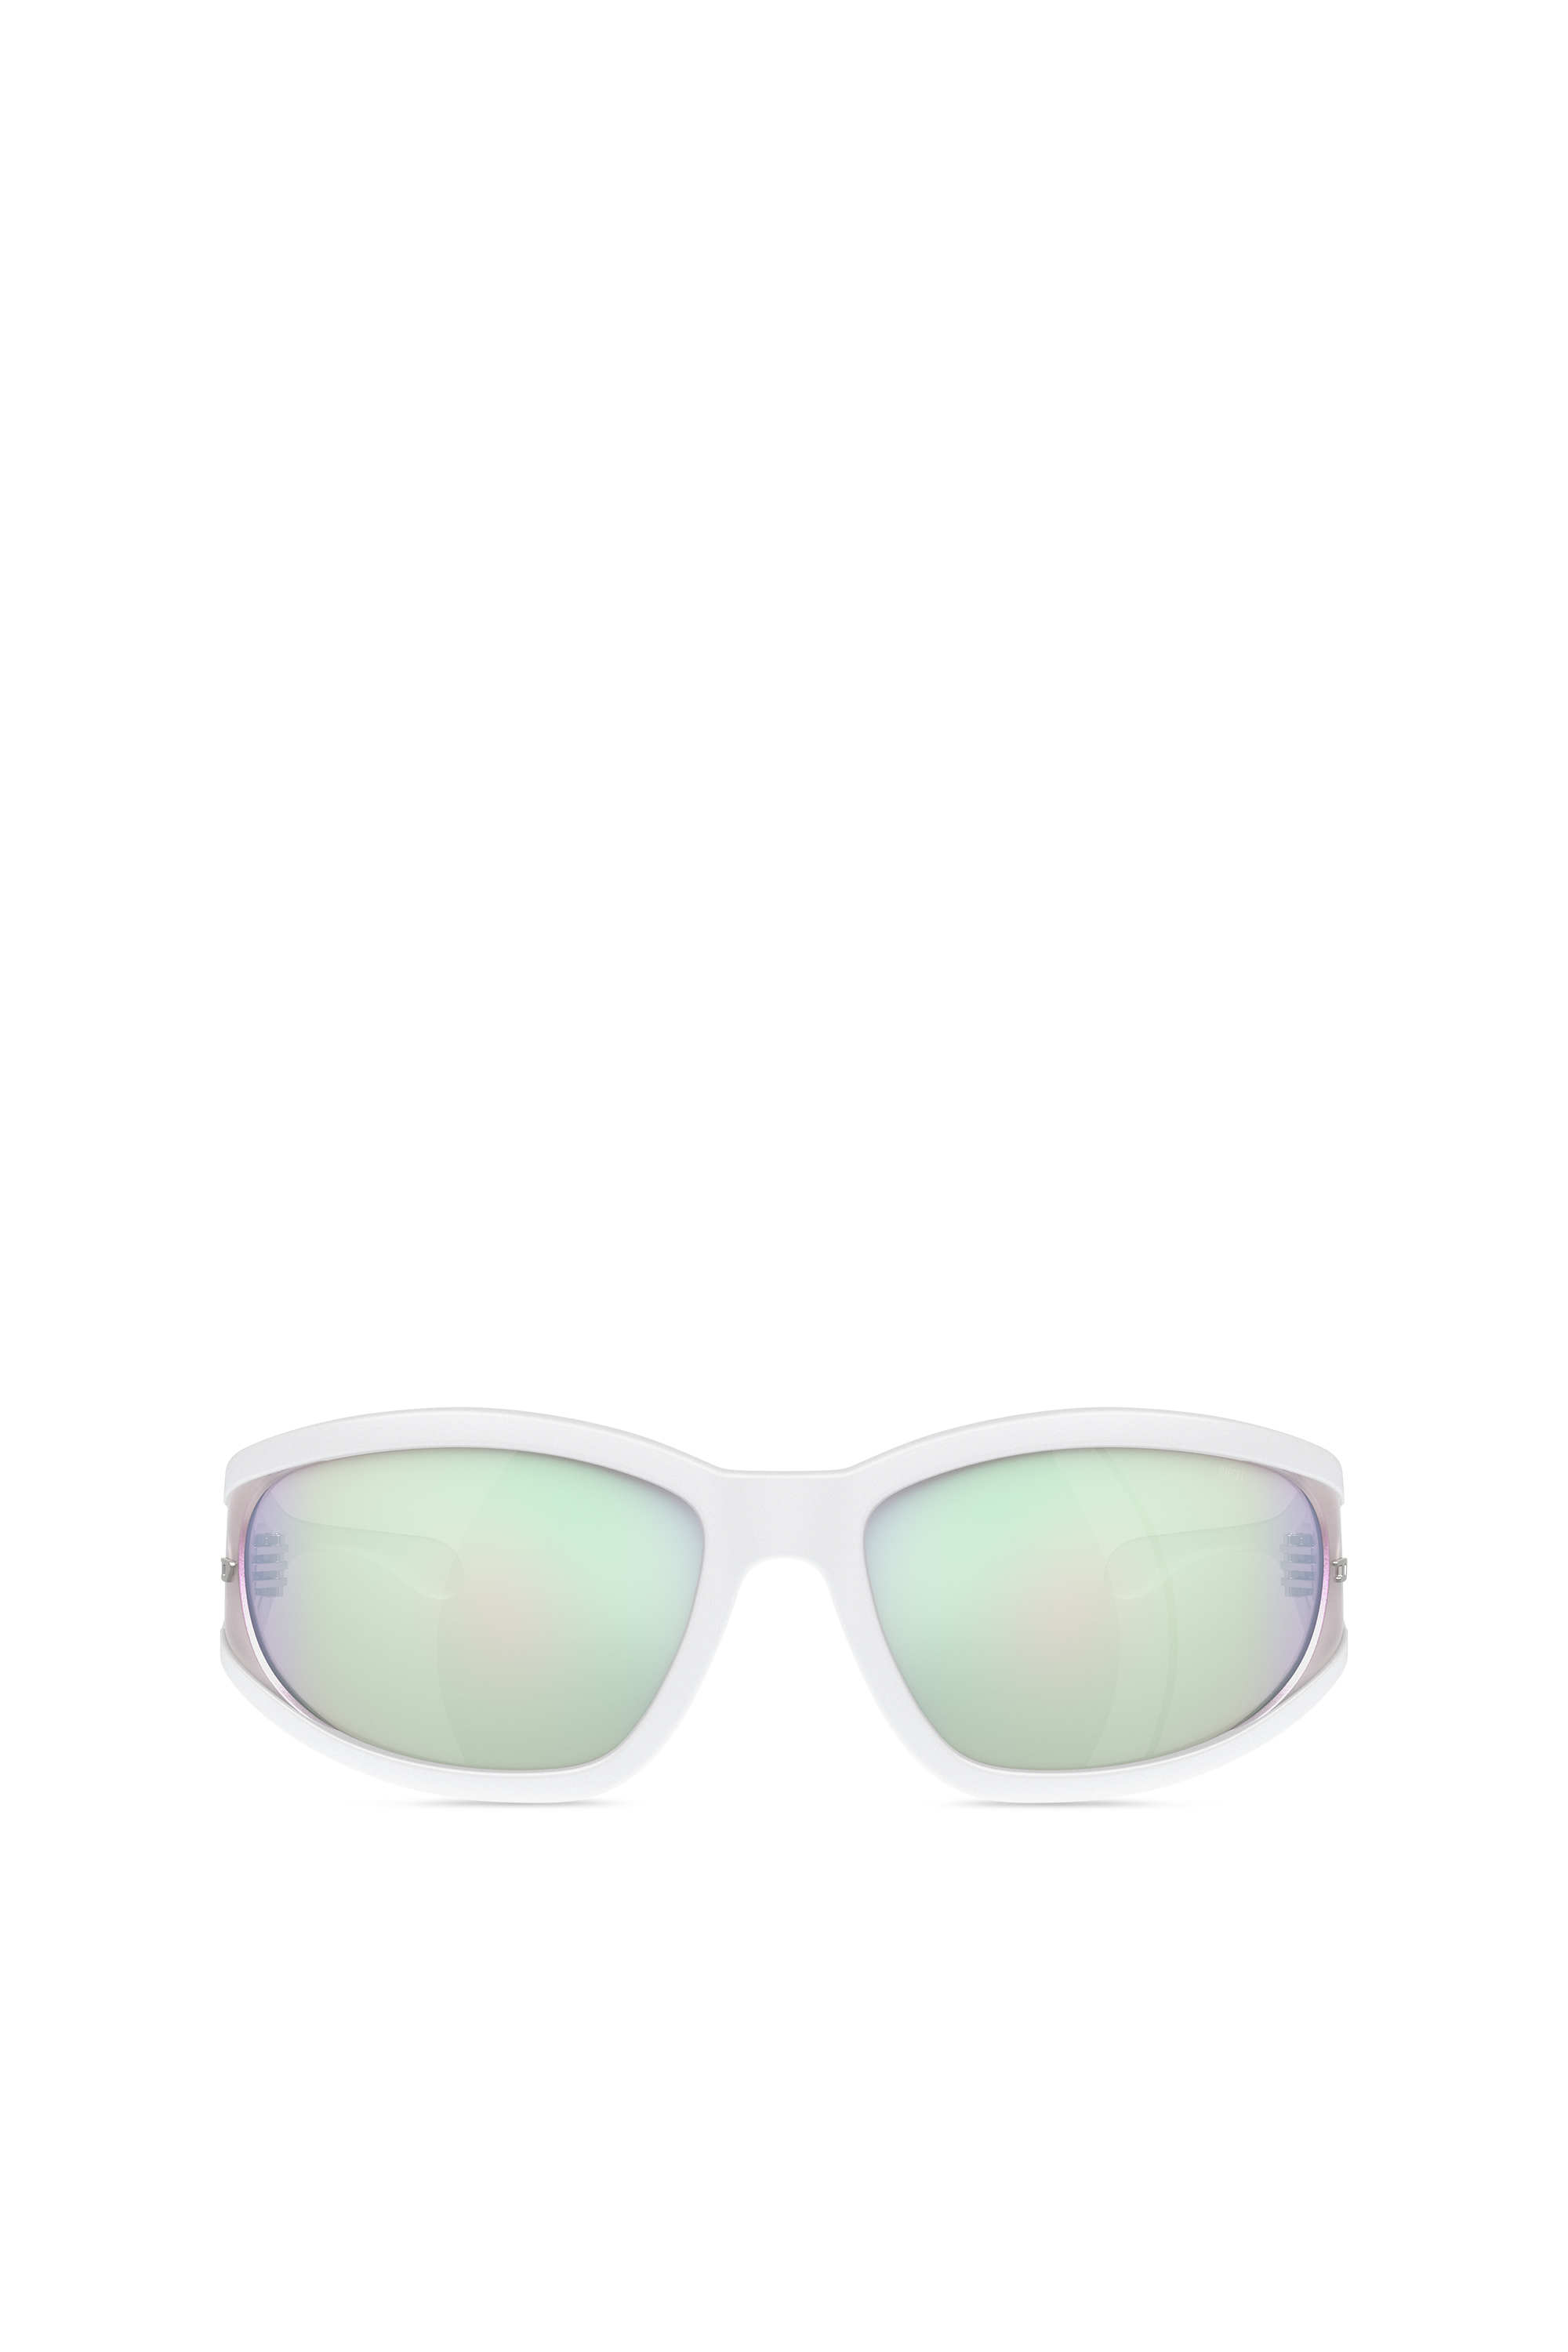 Diesel - Sonnenbrille aus acetat mit rechteckigen gläsern - Sonnenbrille - Unisex - Weiss